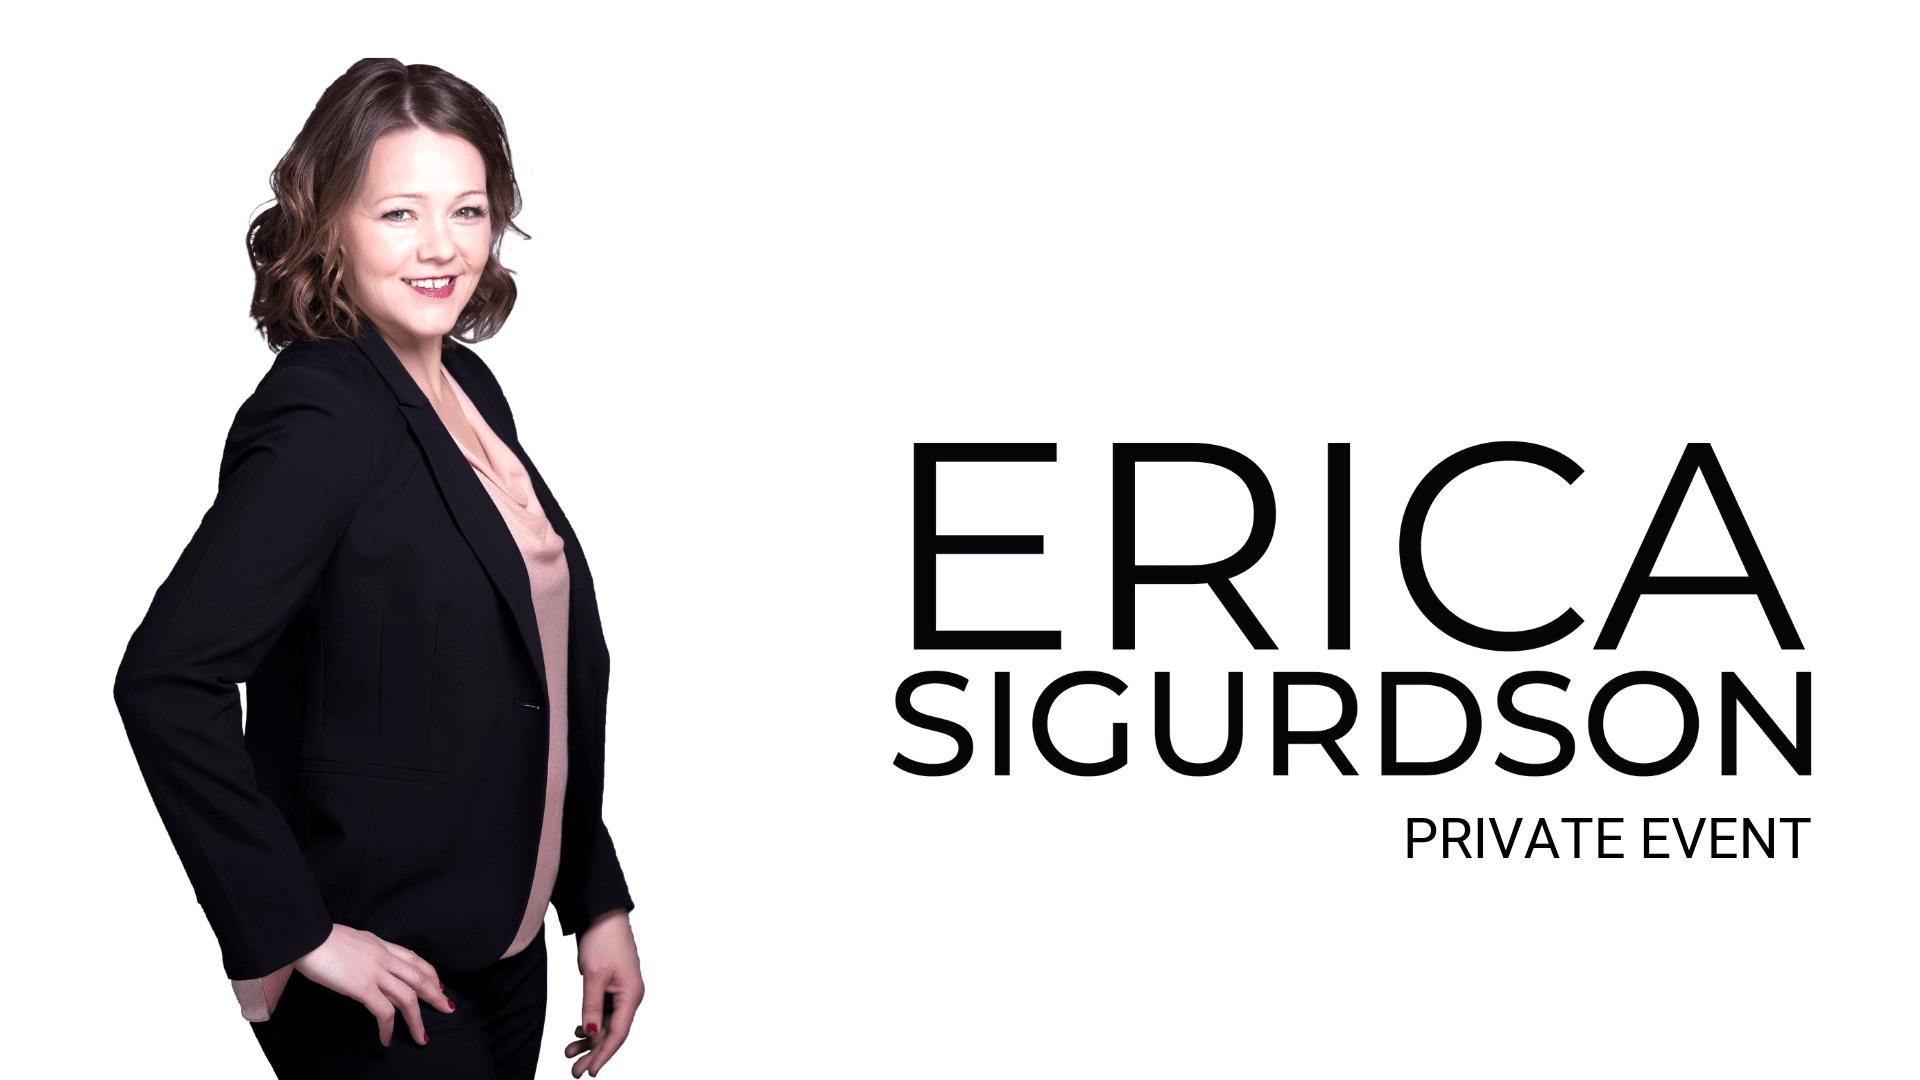 Erica sigurdson private event comedy